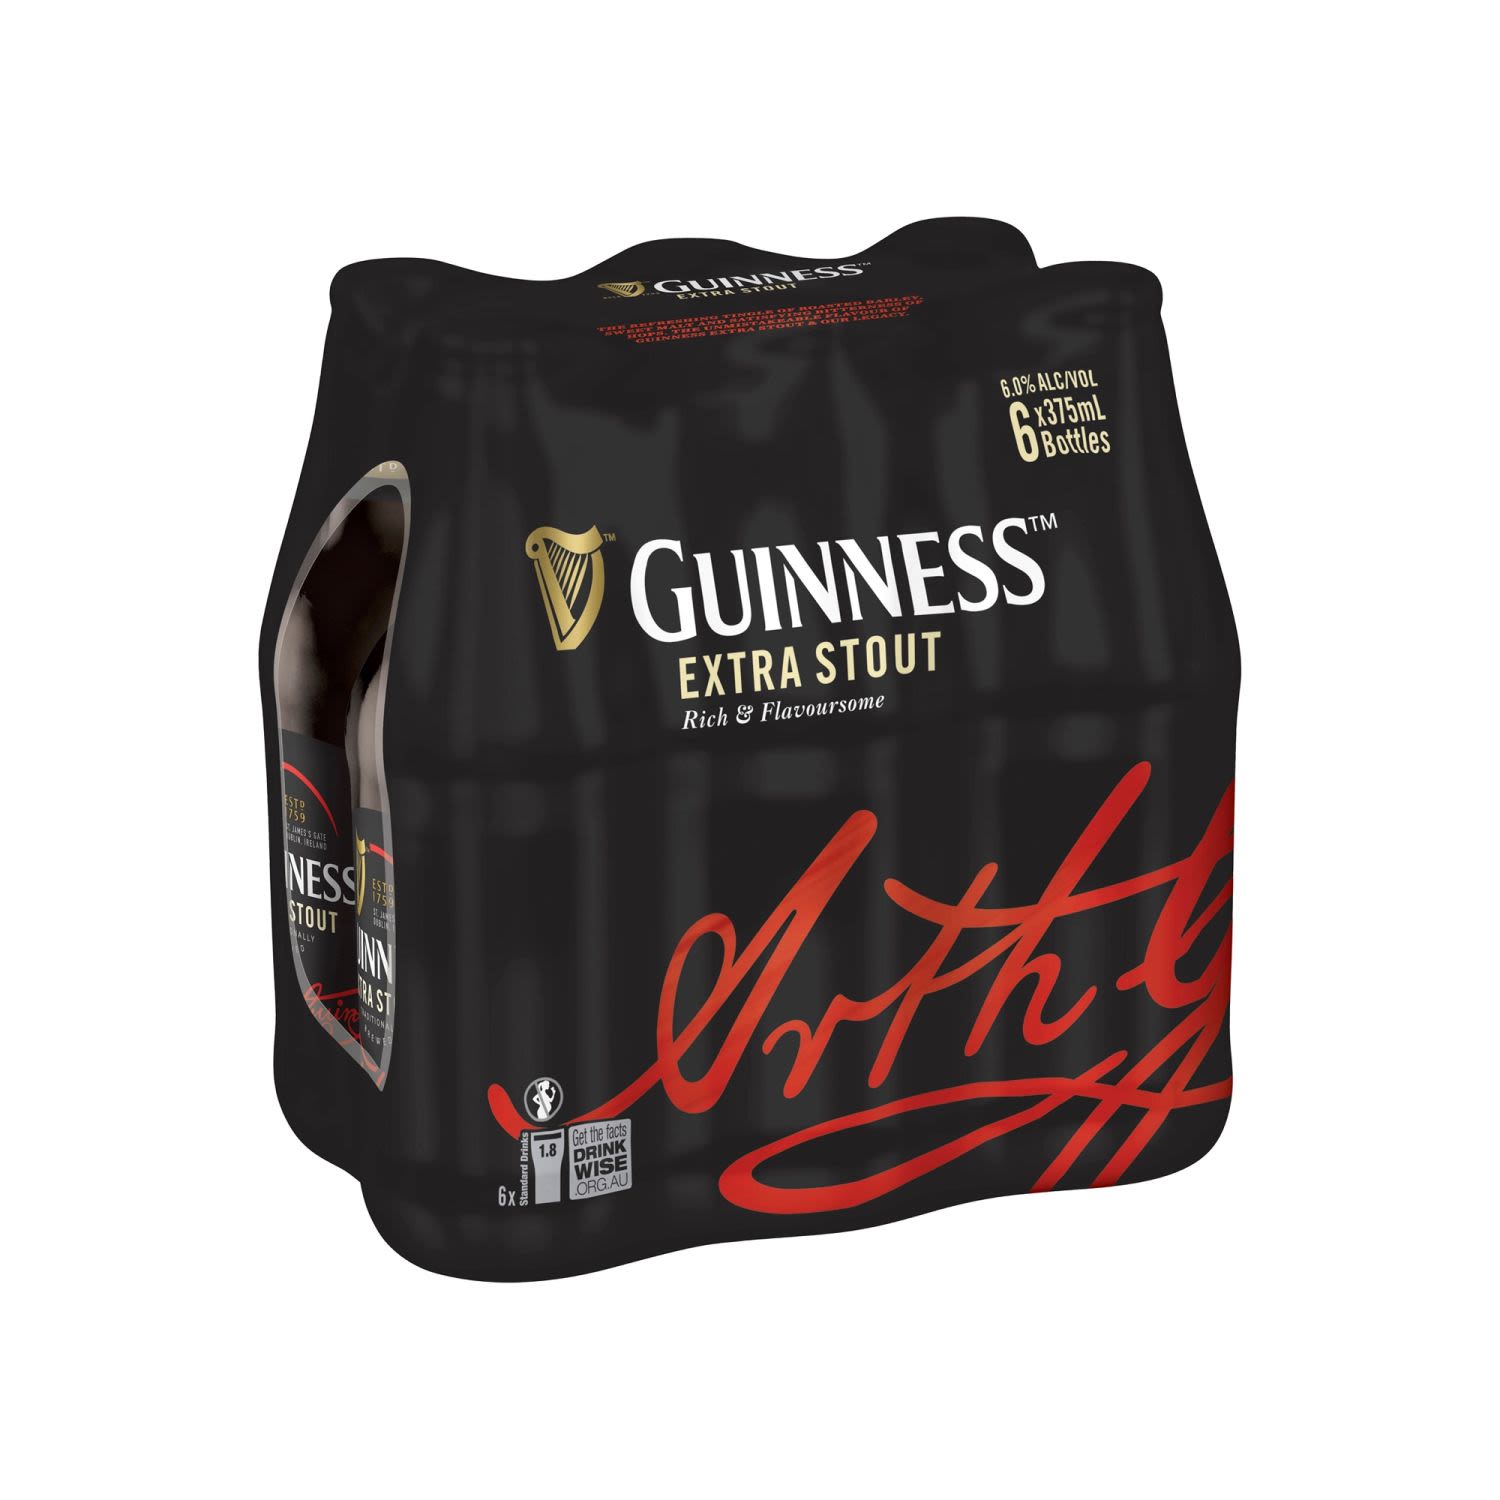 Guinness Extra Stout Bottle 375mL 6 Pack